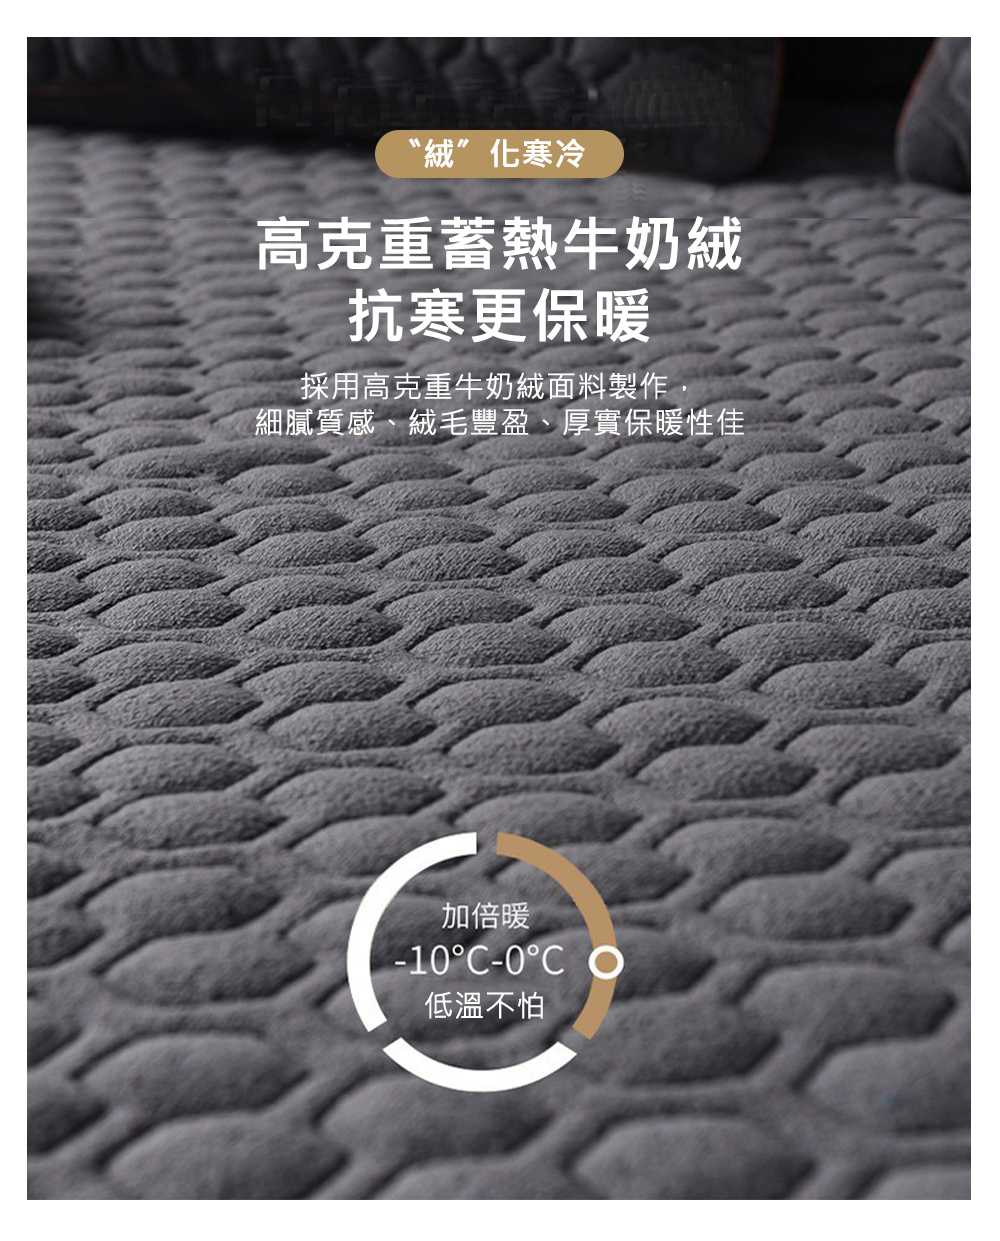 【京都手祚】 石墨烯牛奶絨鋪棉保暖床包枕套組 單人/雙人/加大 均一價